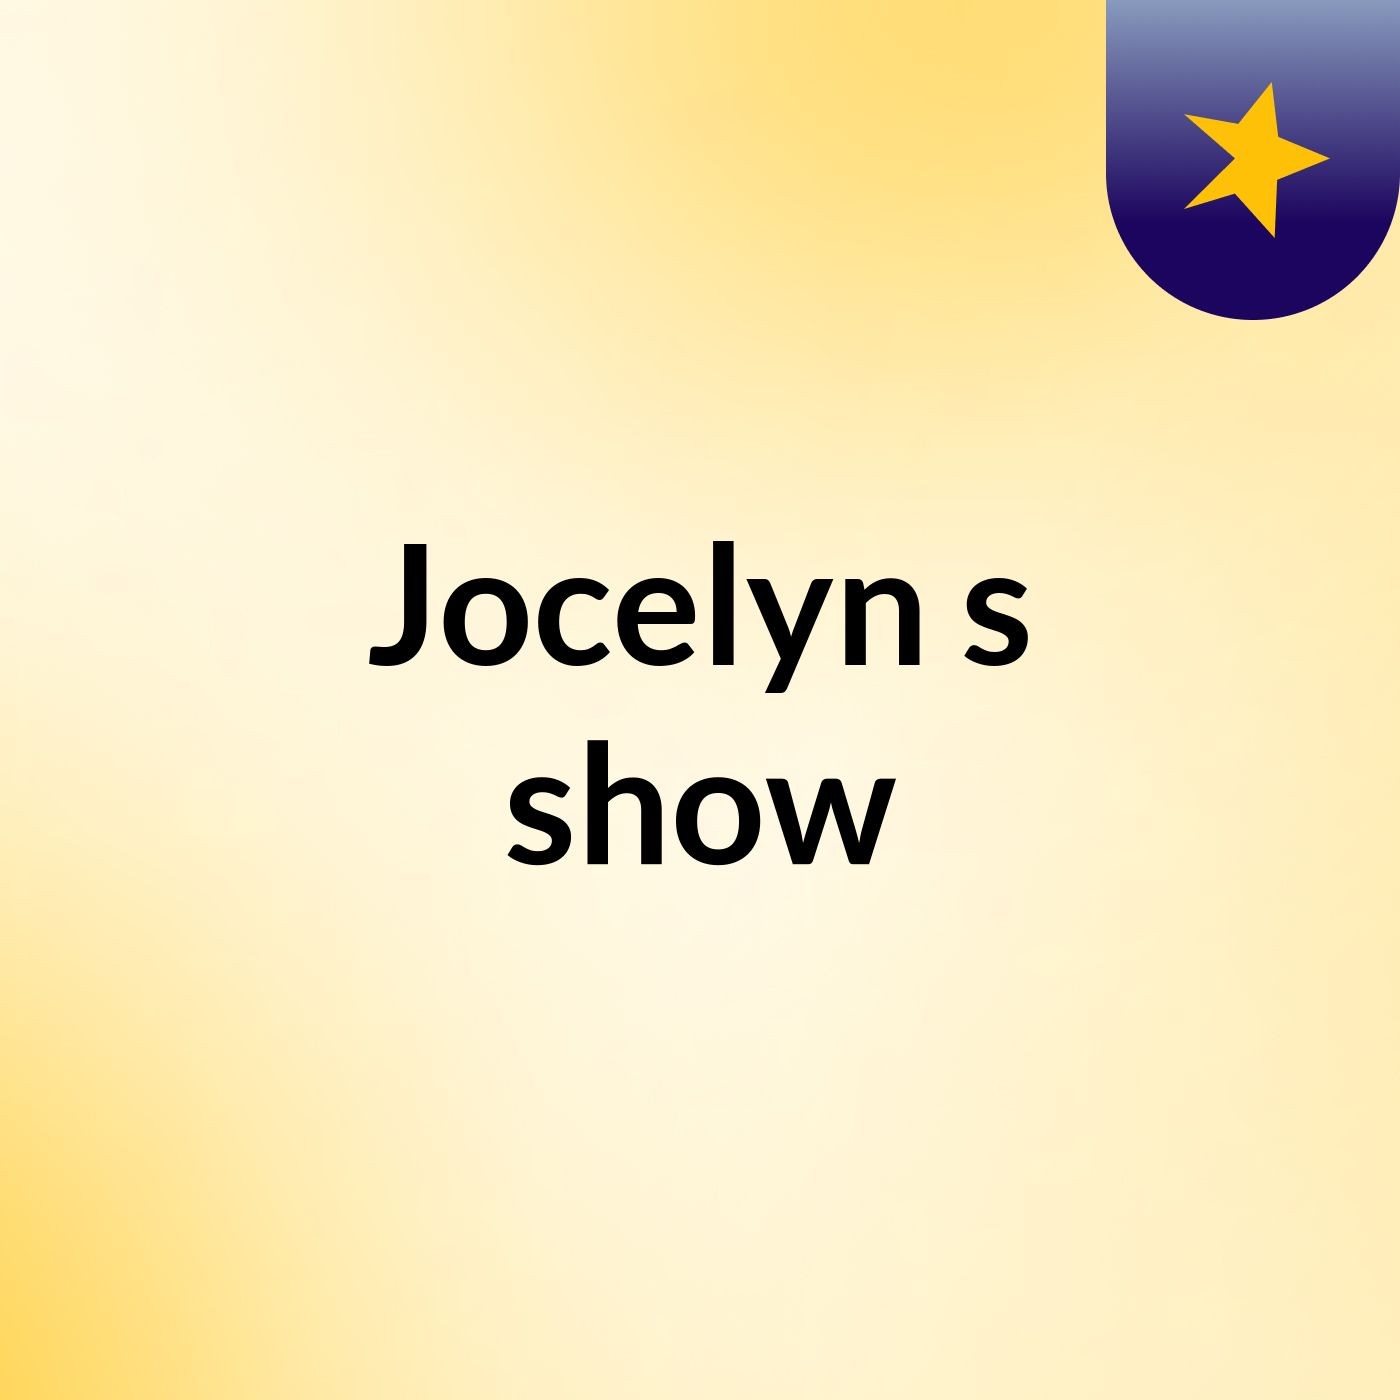 Jocelyn's show